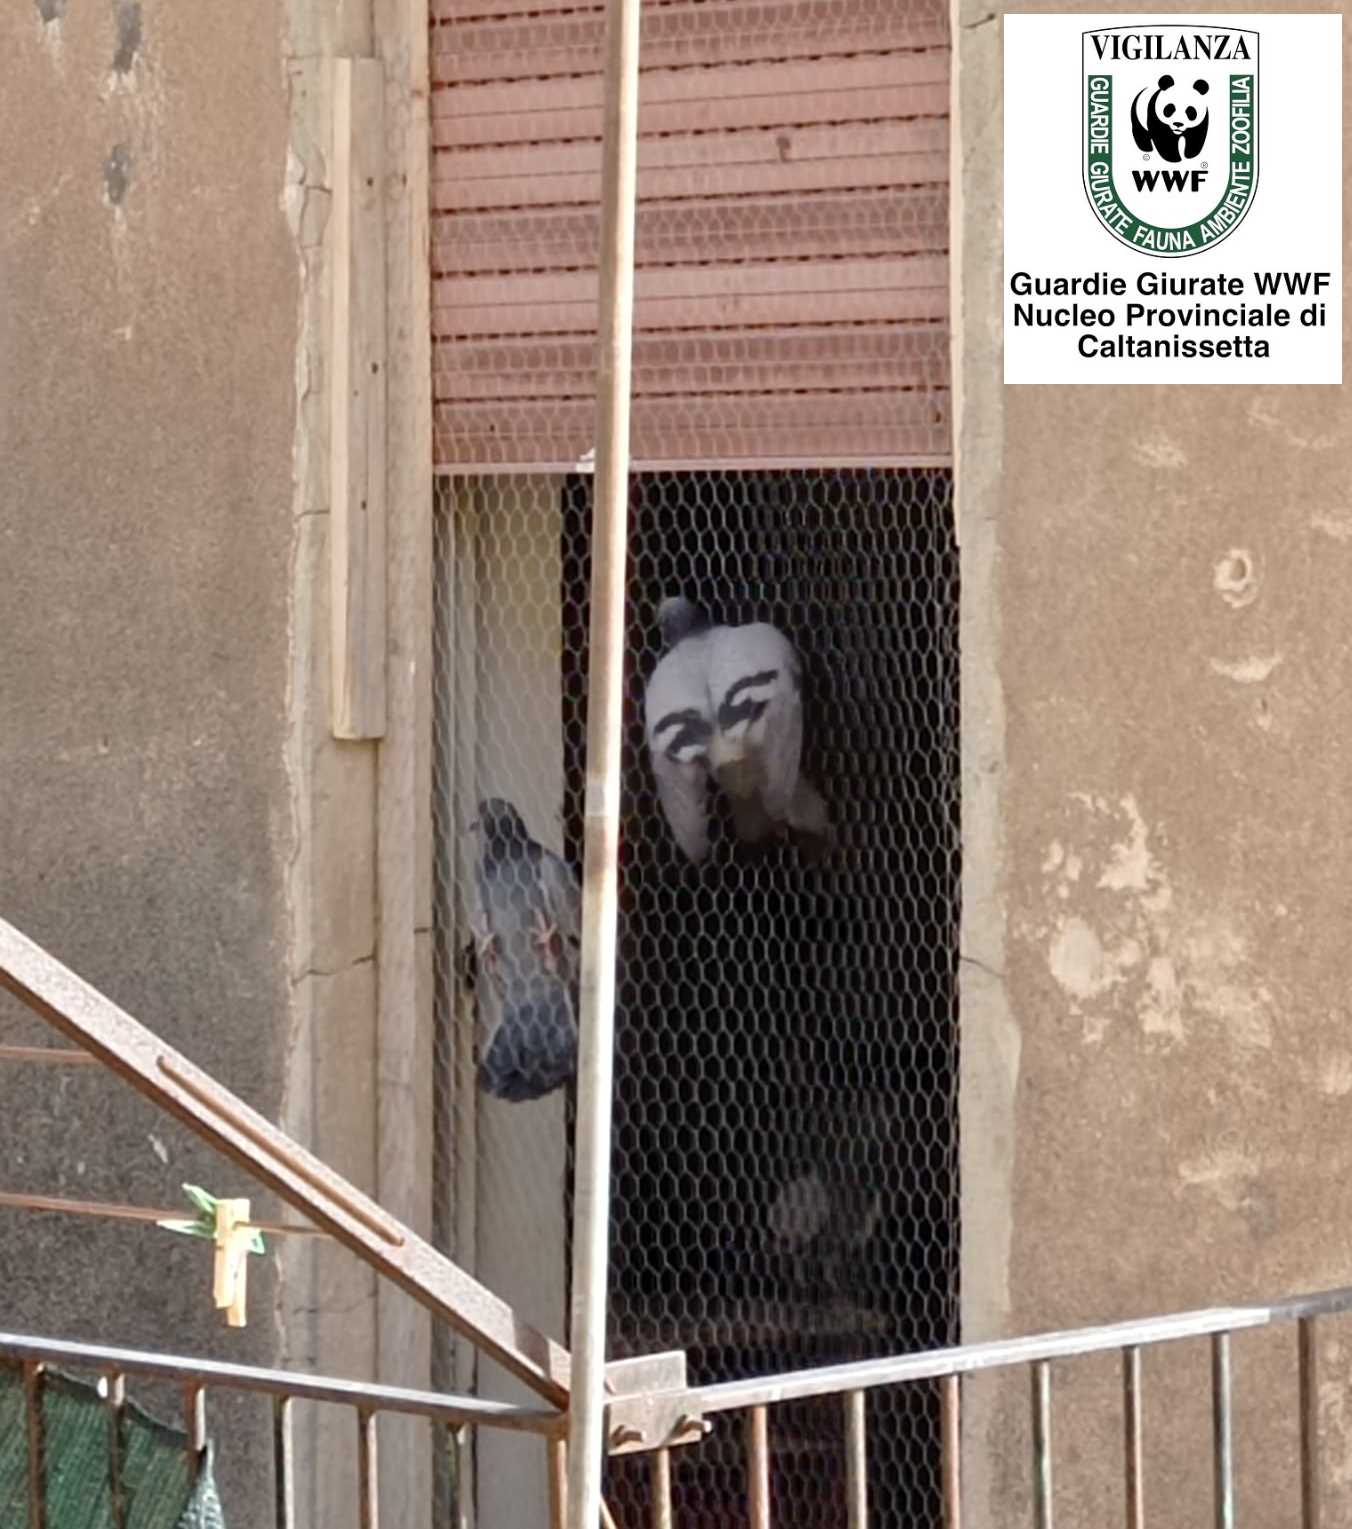 San Cataldo. Le Guardie zoofile WWF hanno liberato colombe rimaste intrappolate in un appartamento disabitato